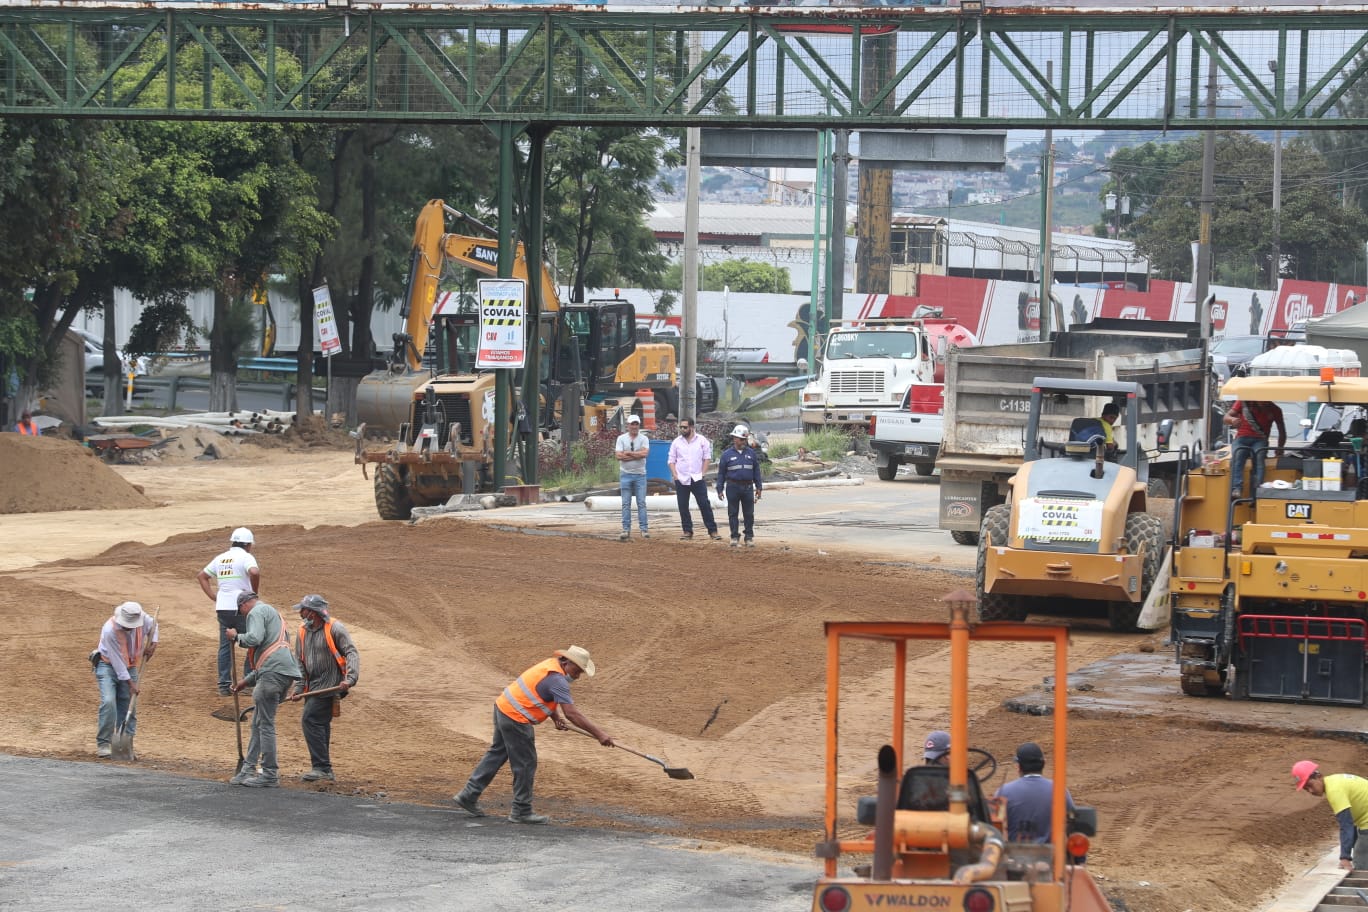 Autoridades esperan finalizar los trabajos en la carretera este fin de semana para habilitar el paso. Fotografía: Prensa Libre (Roberto Reynoso).